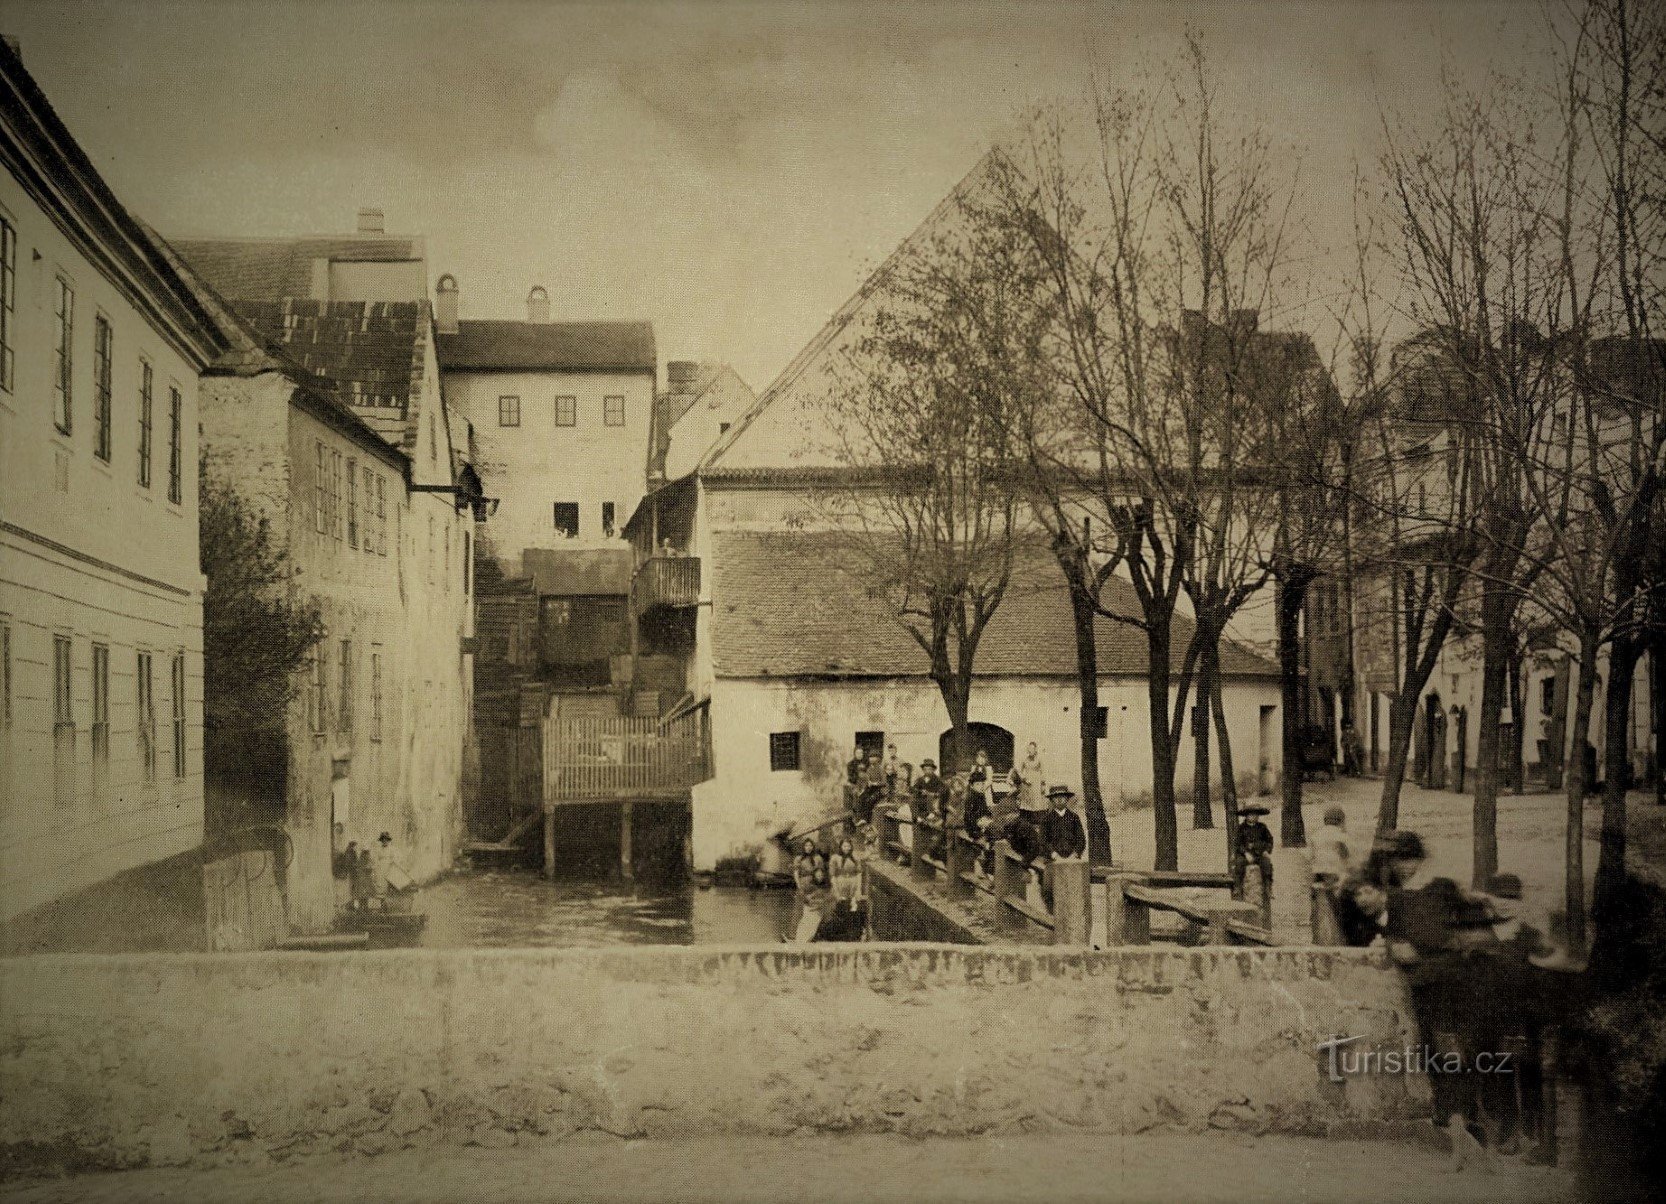 20 世紀初頭のパルドゥビツェのヴェルナー堤防、まだチザンスキー ムリーン